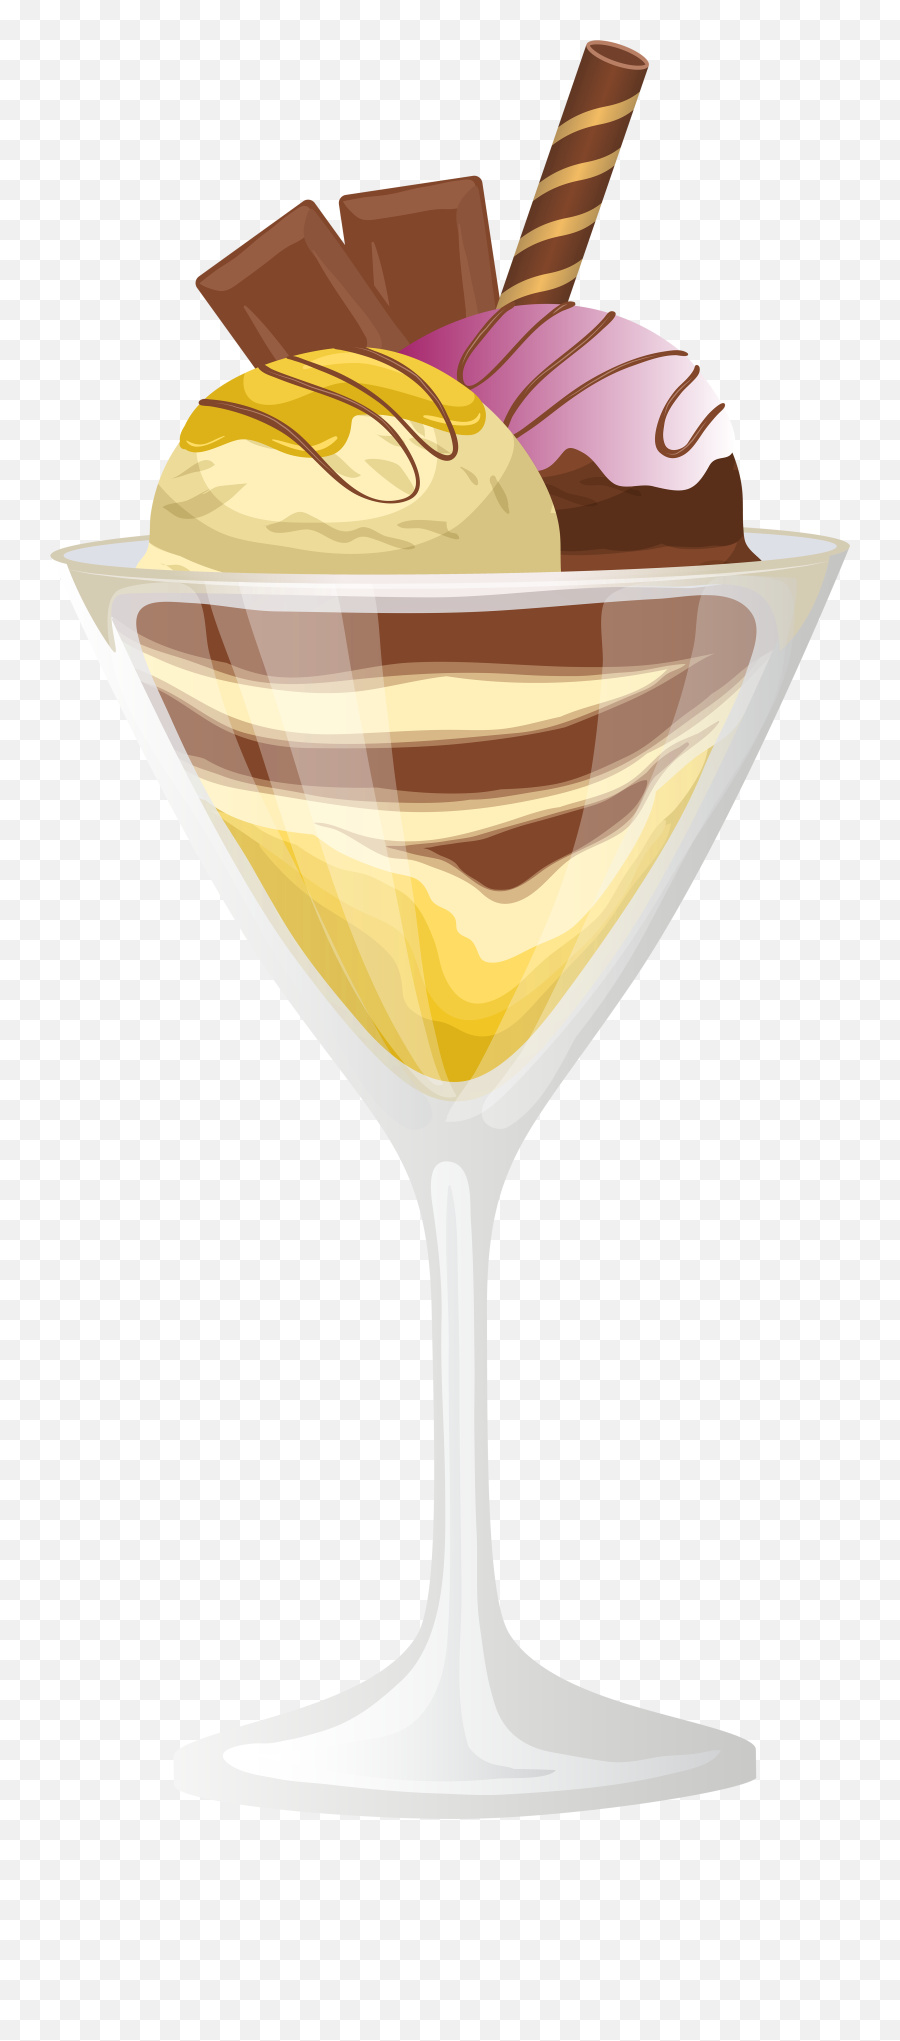 Ferrero Sundae Ferrero Rocher Ice Cream Sundae - Clip Art Emoji,Emoji Theme Ice Cream Sundae Dish